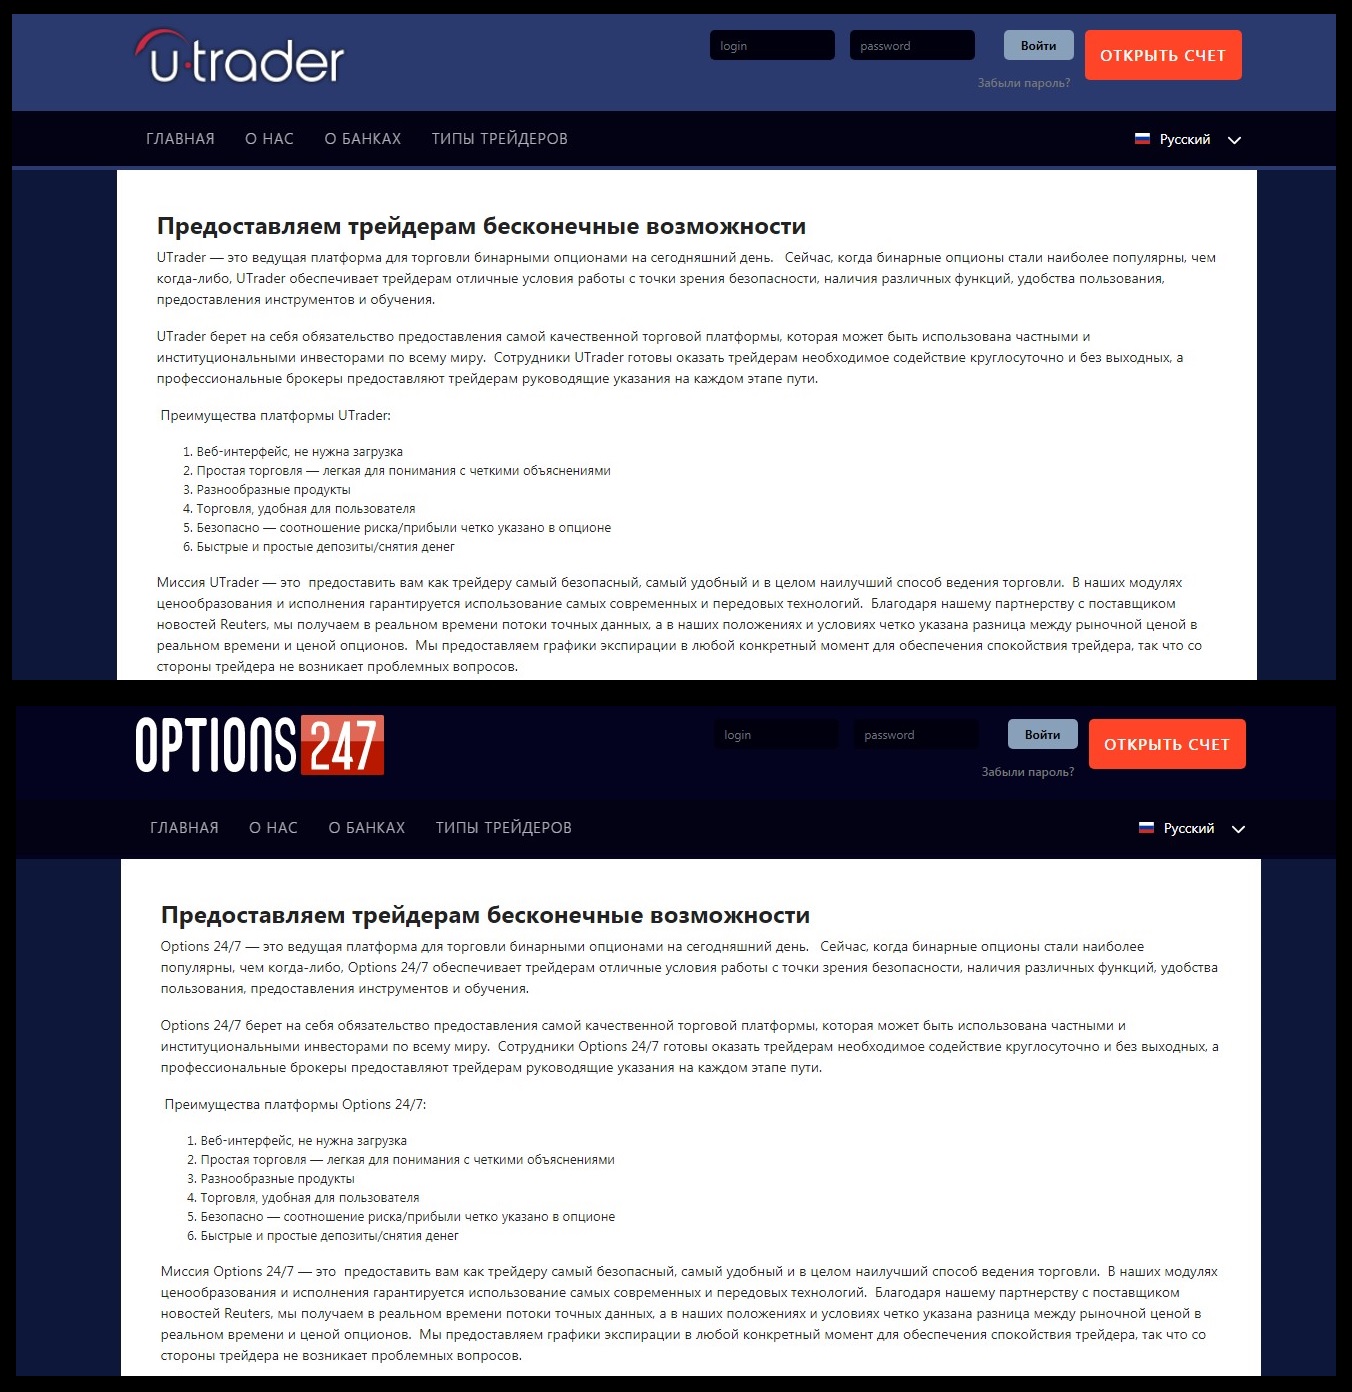 Описание проектов Options247 и UTtrader